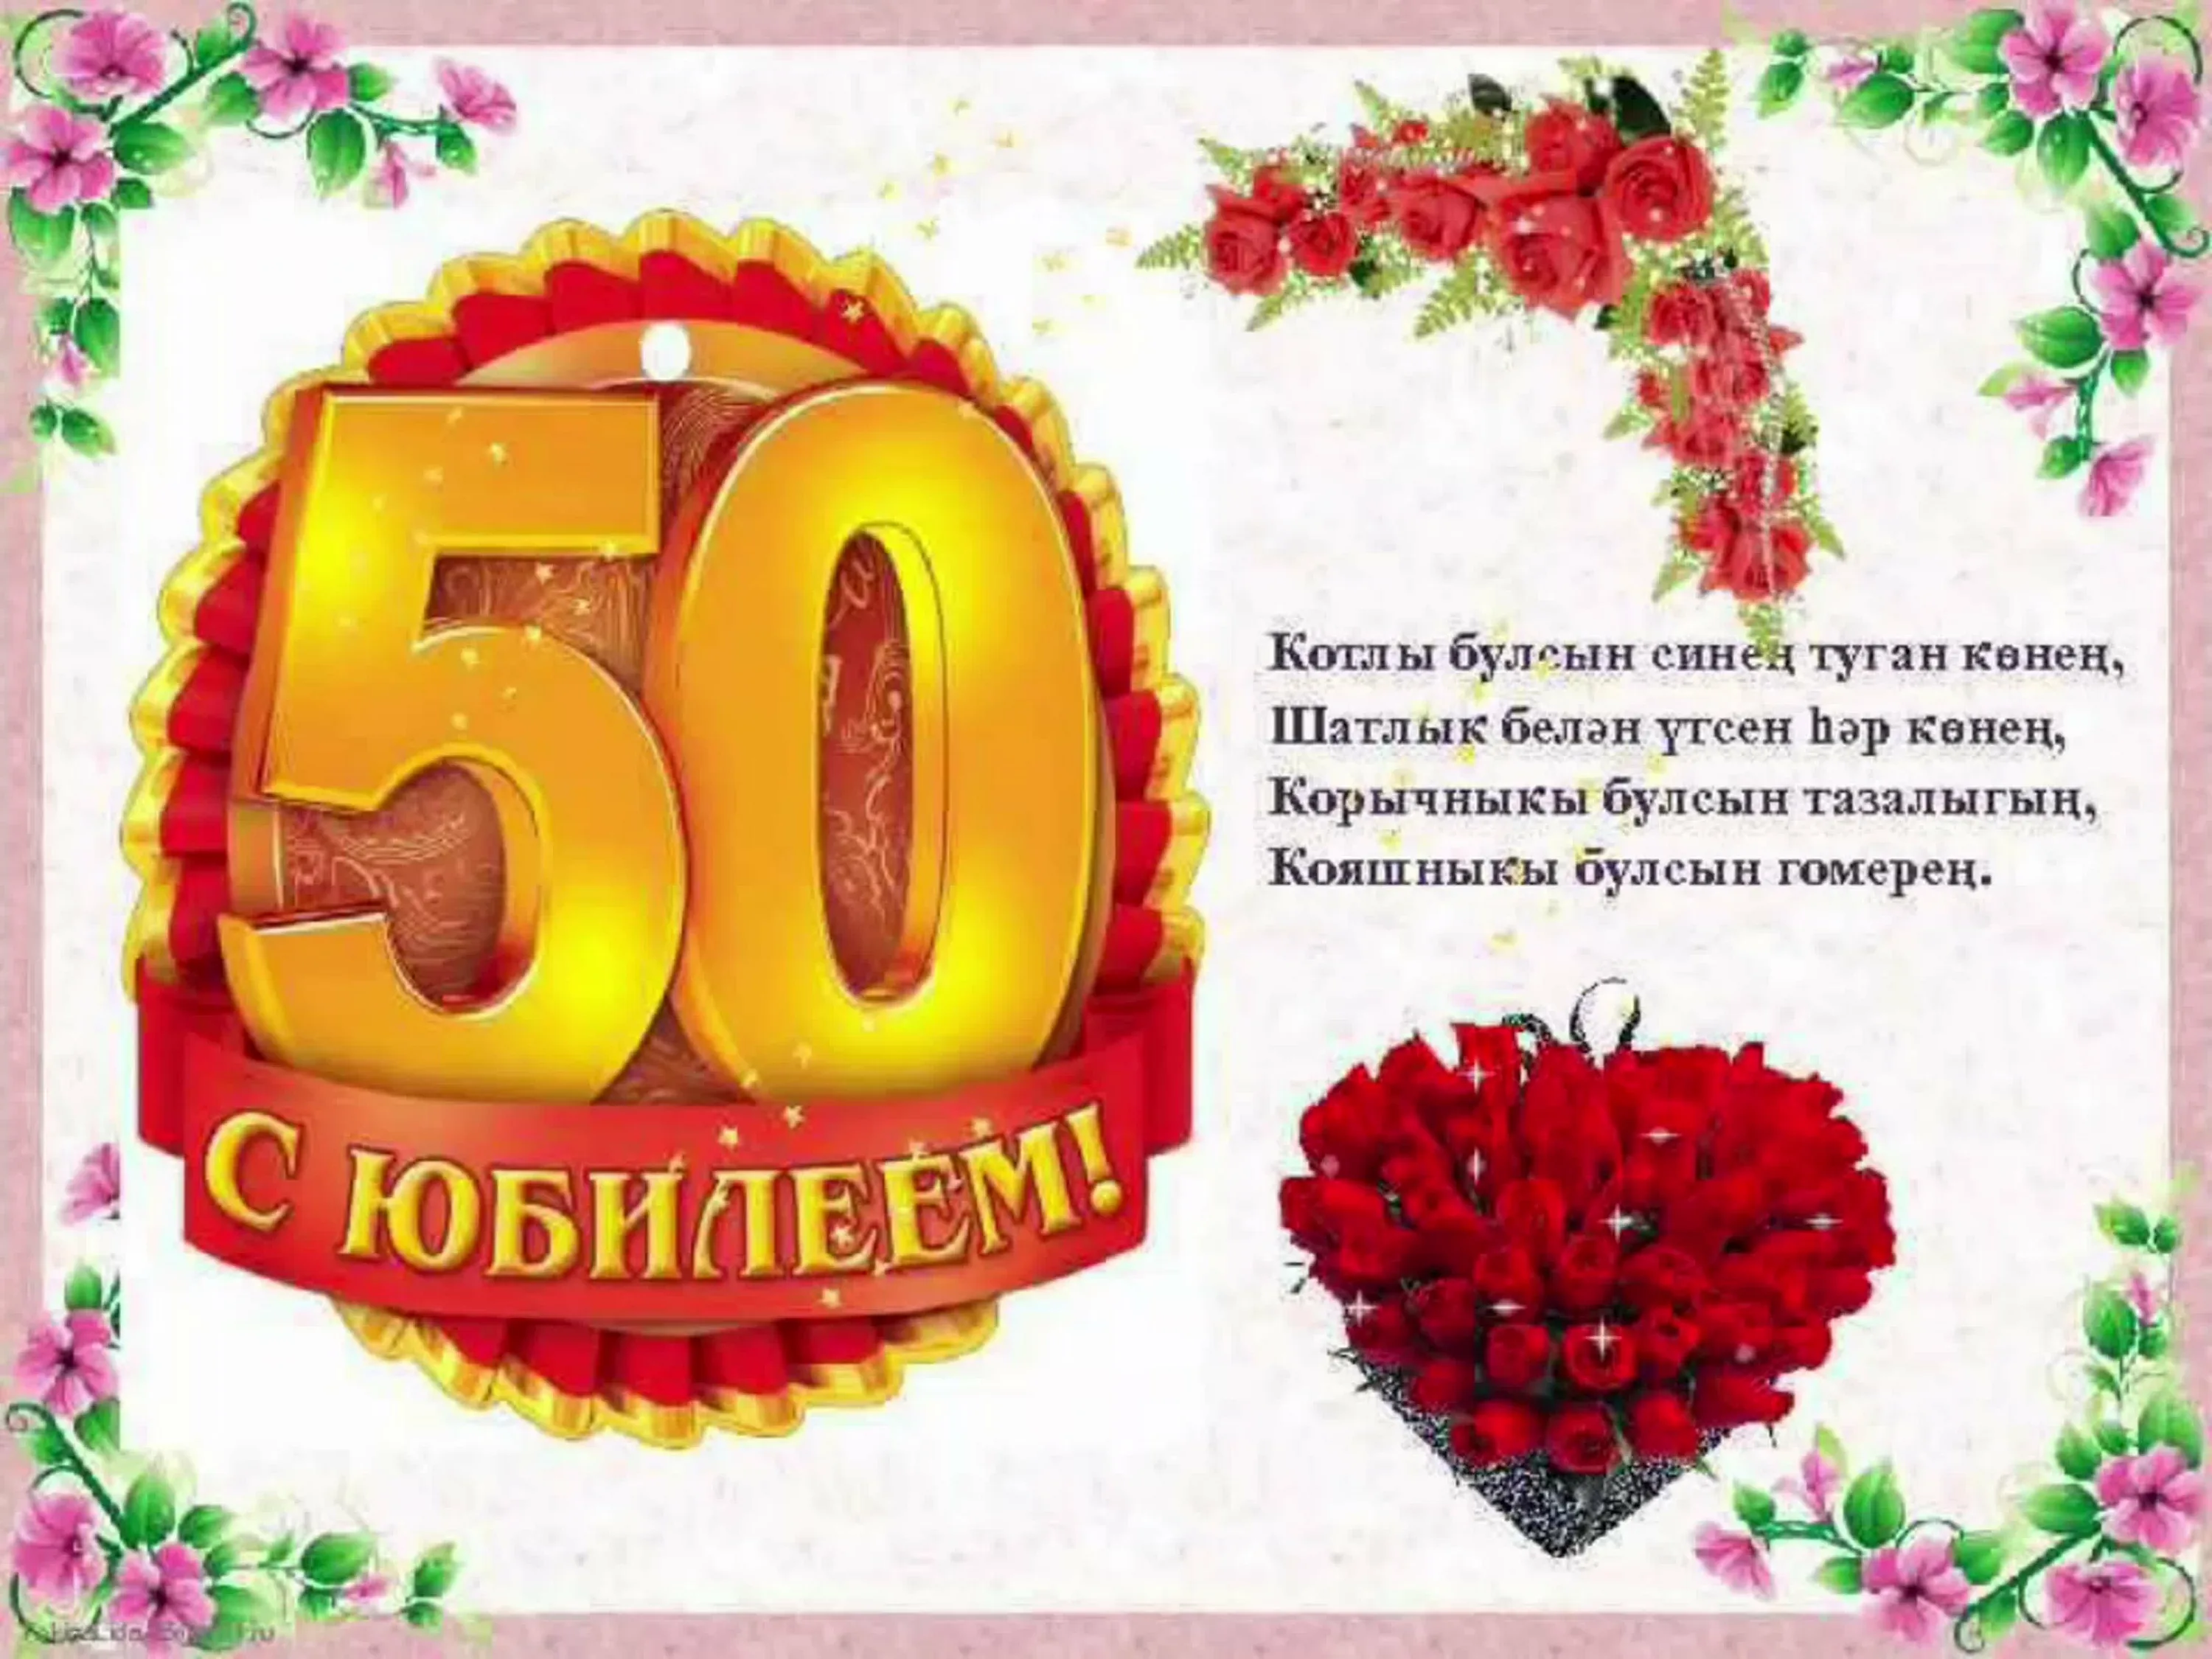 Юбилеем 50 на татарском языке. Открытка с юбилеем. Открытки с юбилеем женщине 50. Открытки с юбилеем женщине 60. Открытки с днём рождения женщине 50 лет.